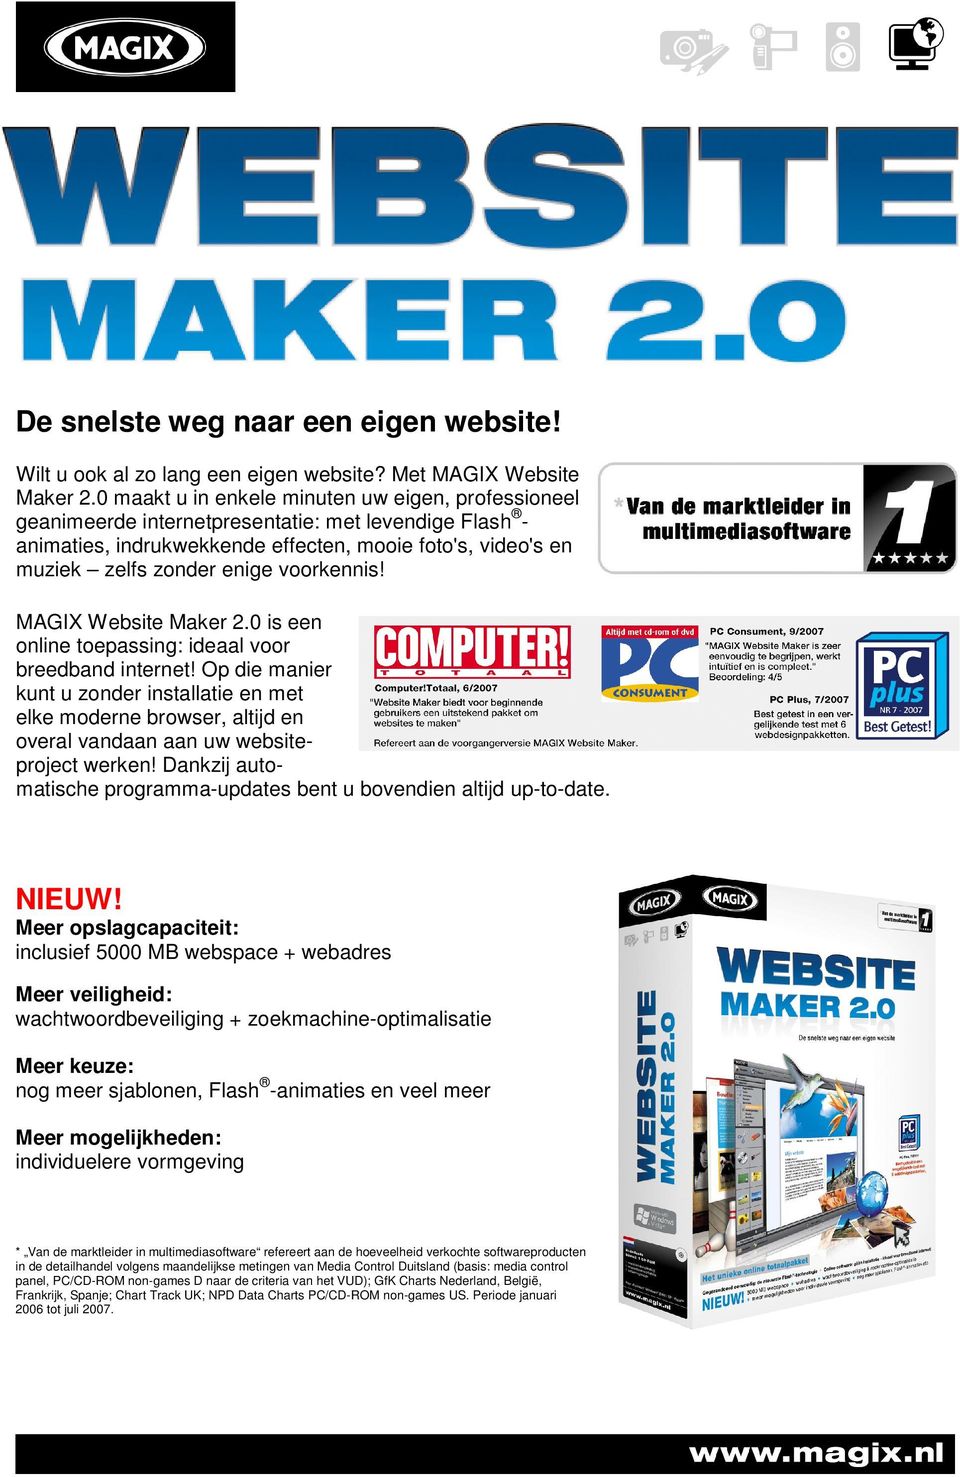 voorkennis! MAGIX Website Maker 2.0 is een online toepassing: ideaal voor breedband internet!